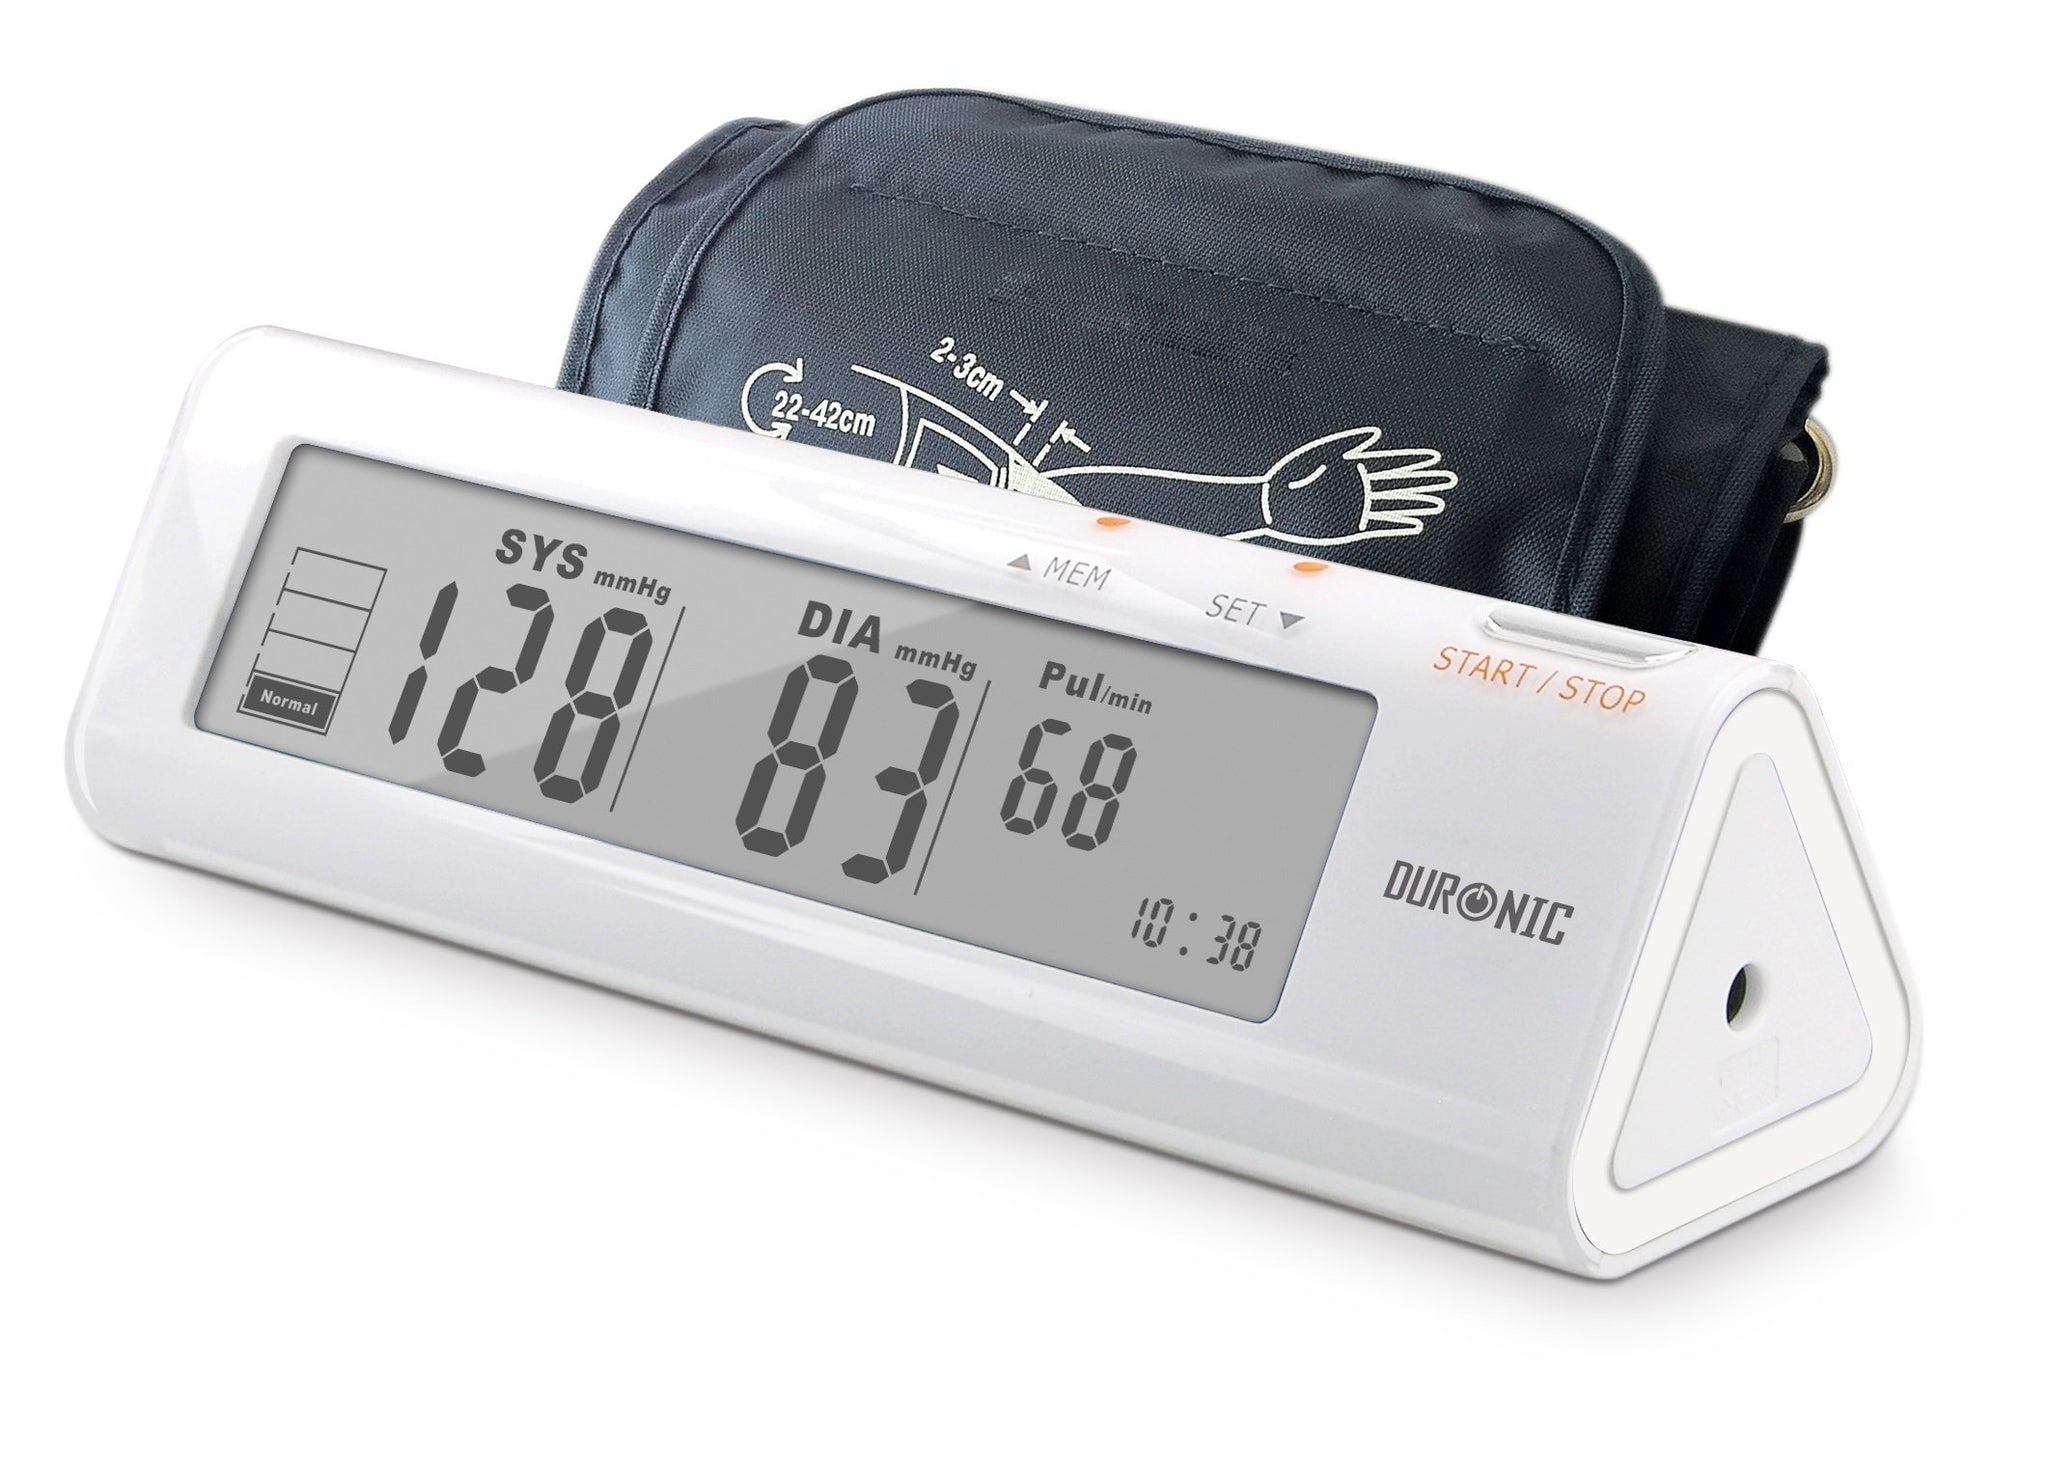 Duronic Bpm450 De brazo monitor arterial con memoria lecturas precisas